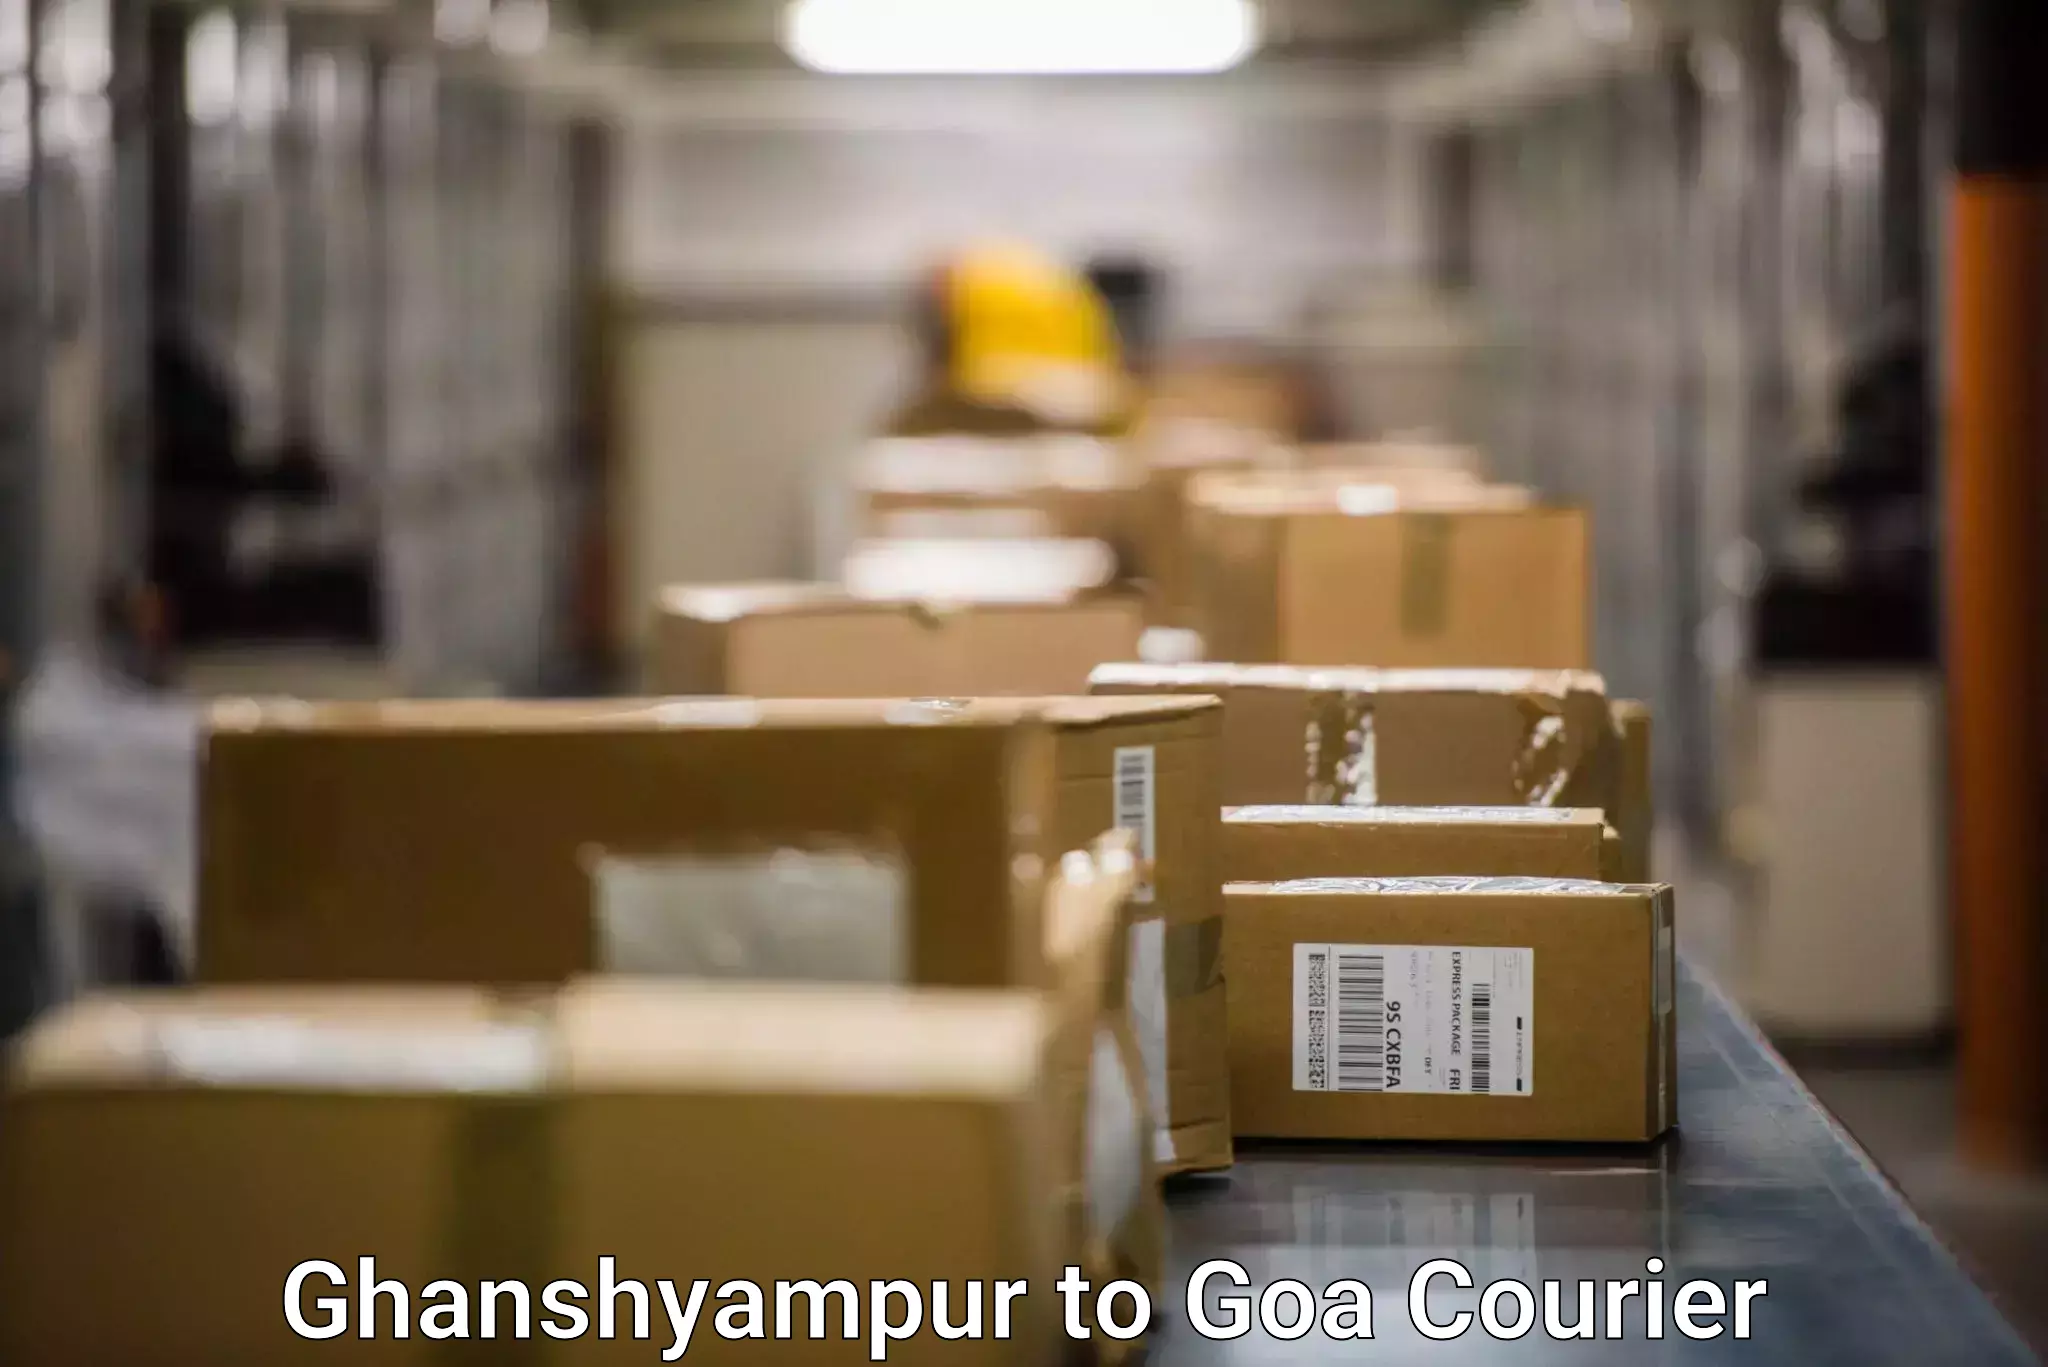 Bulk shipping discounts Ghanshyampur to IIT Goa